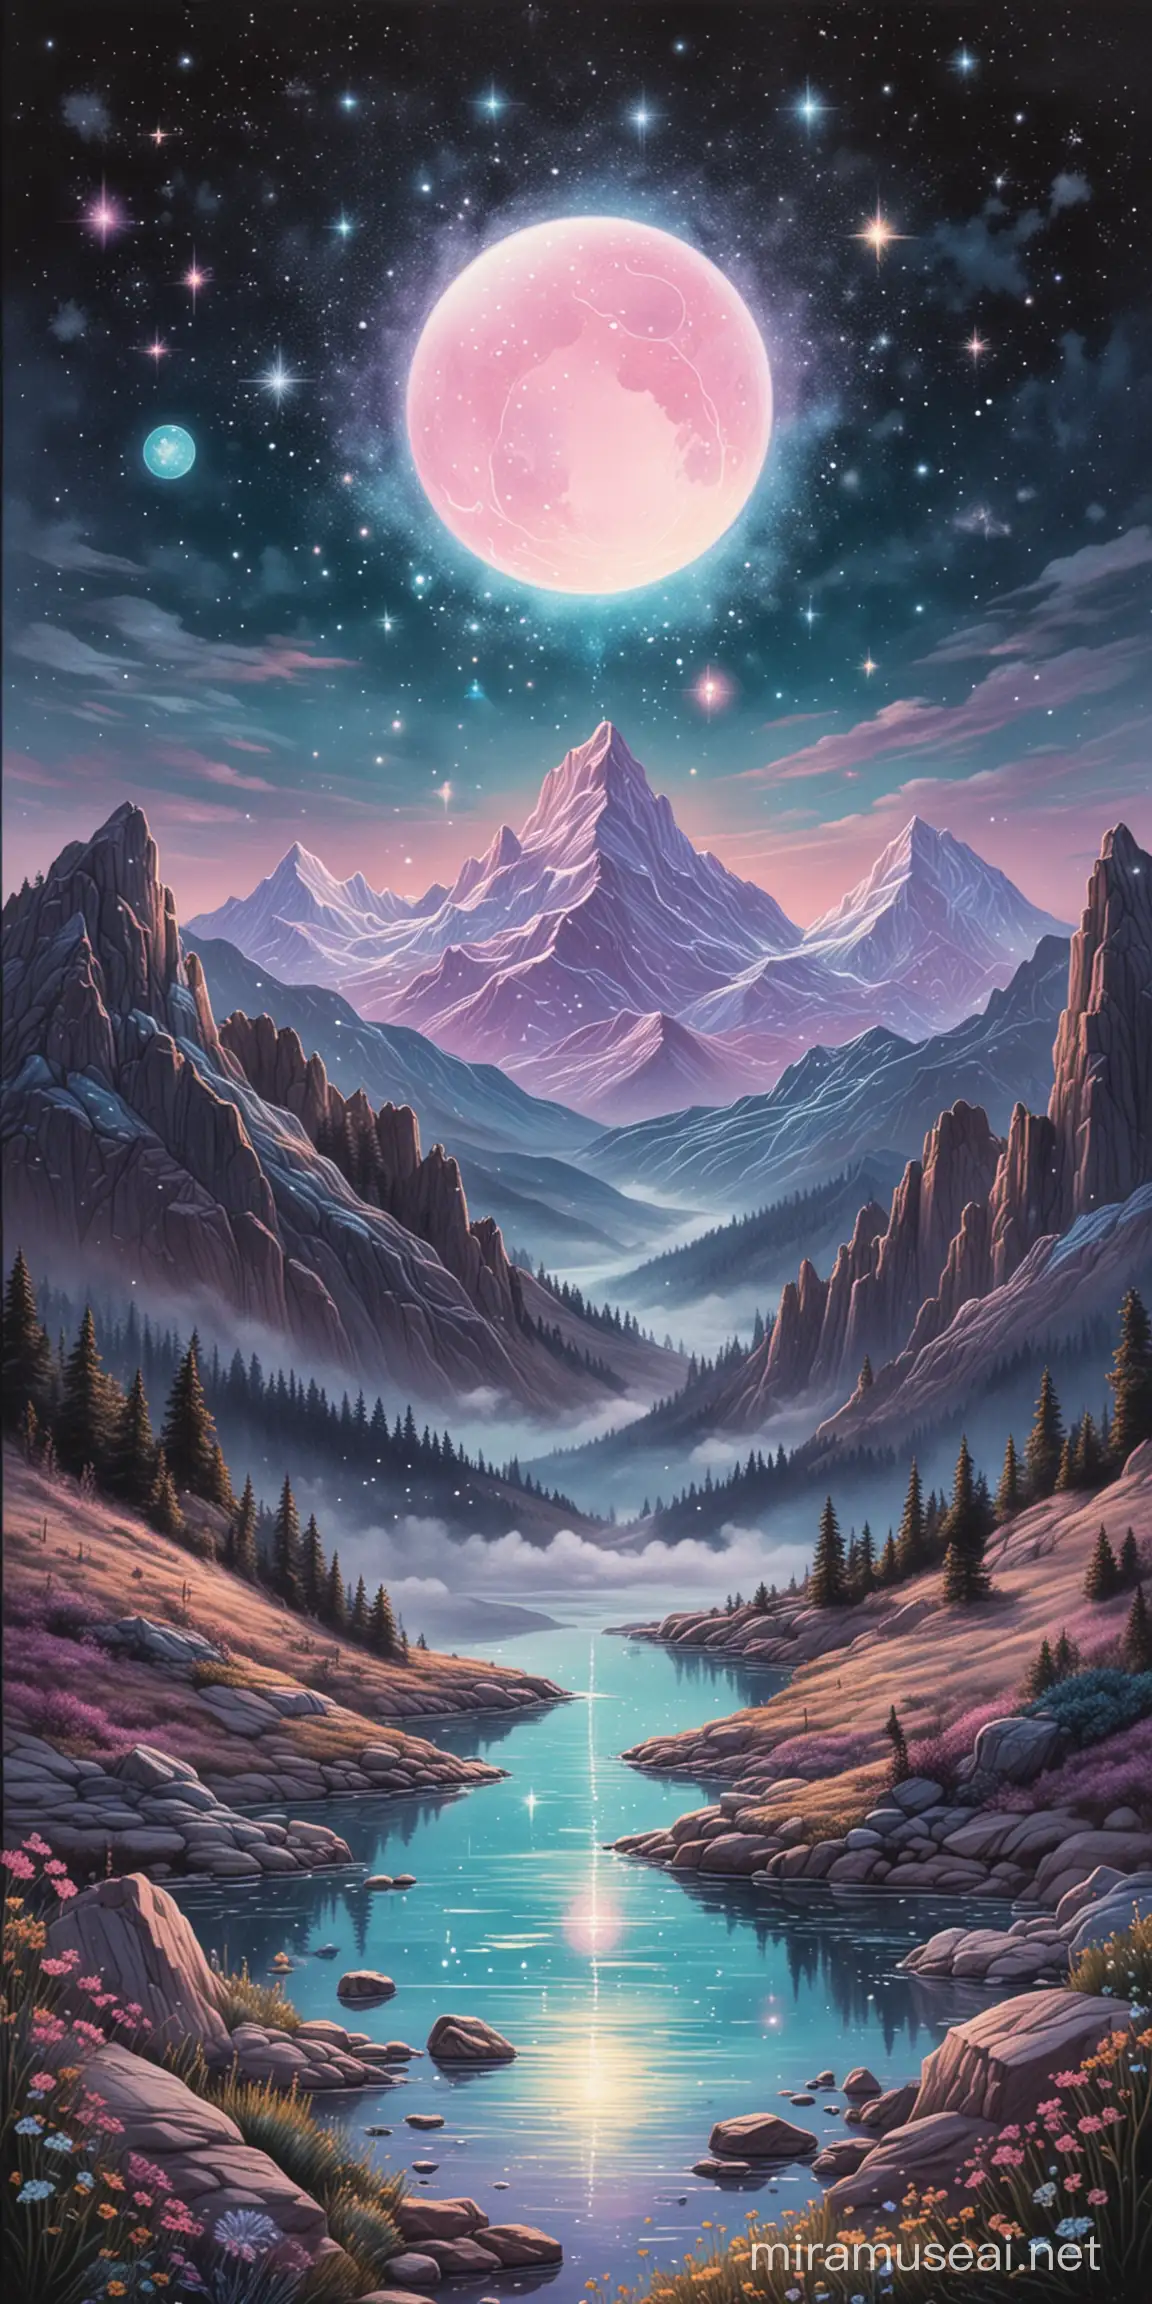 bulle transparente flotte dessin aux pastels image décors cartes art divinatoire art pastels montagne en fond ciel de nuit étoiles brillantes